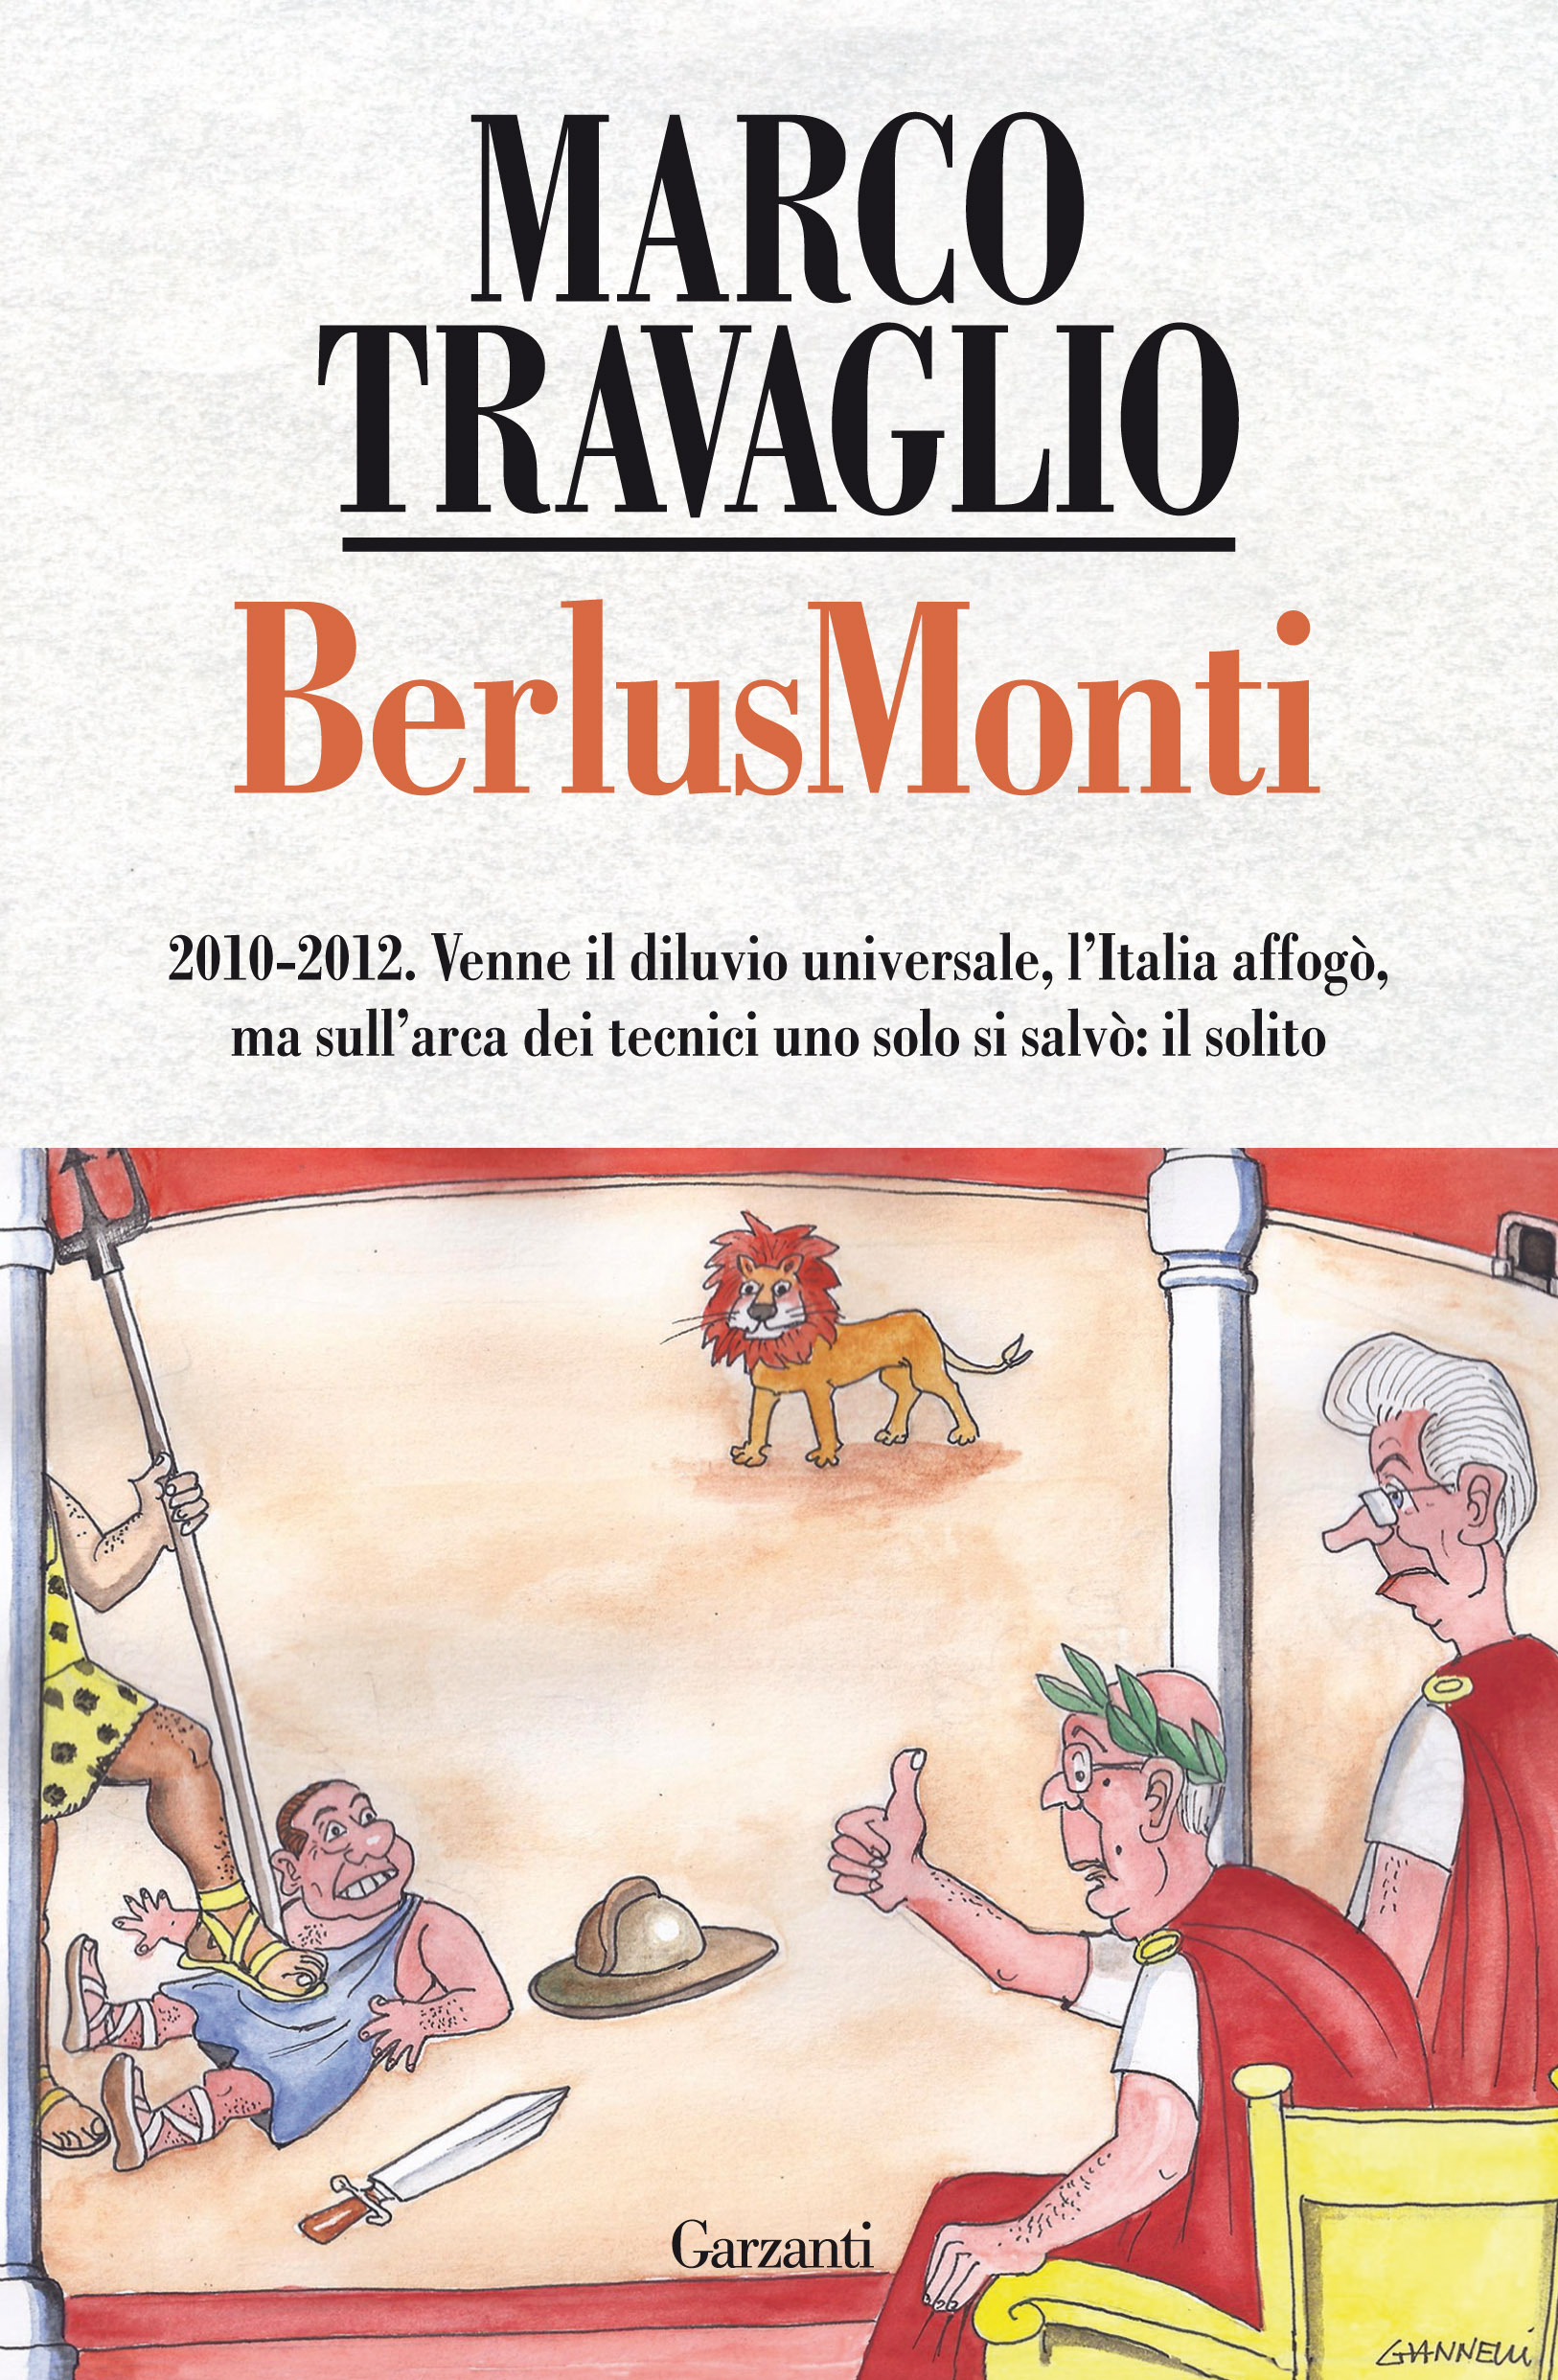 BerlusMonti, il nuovo libro di Marco Travaglio